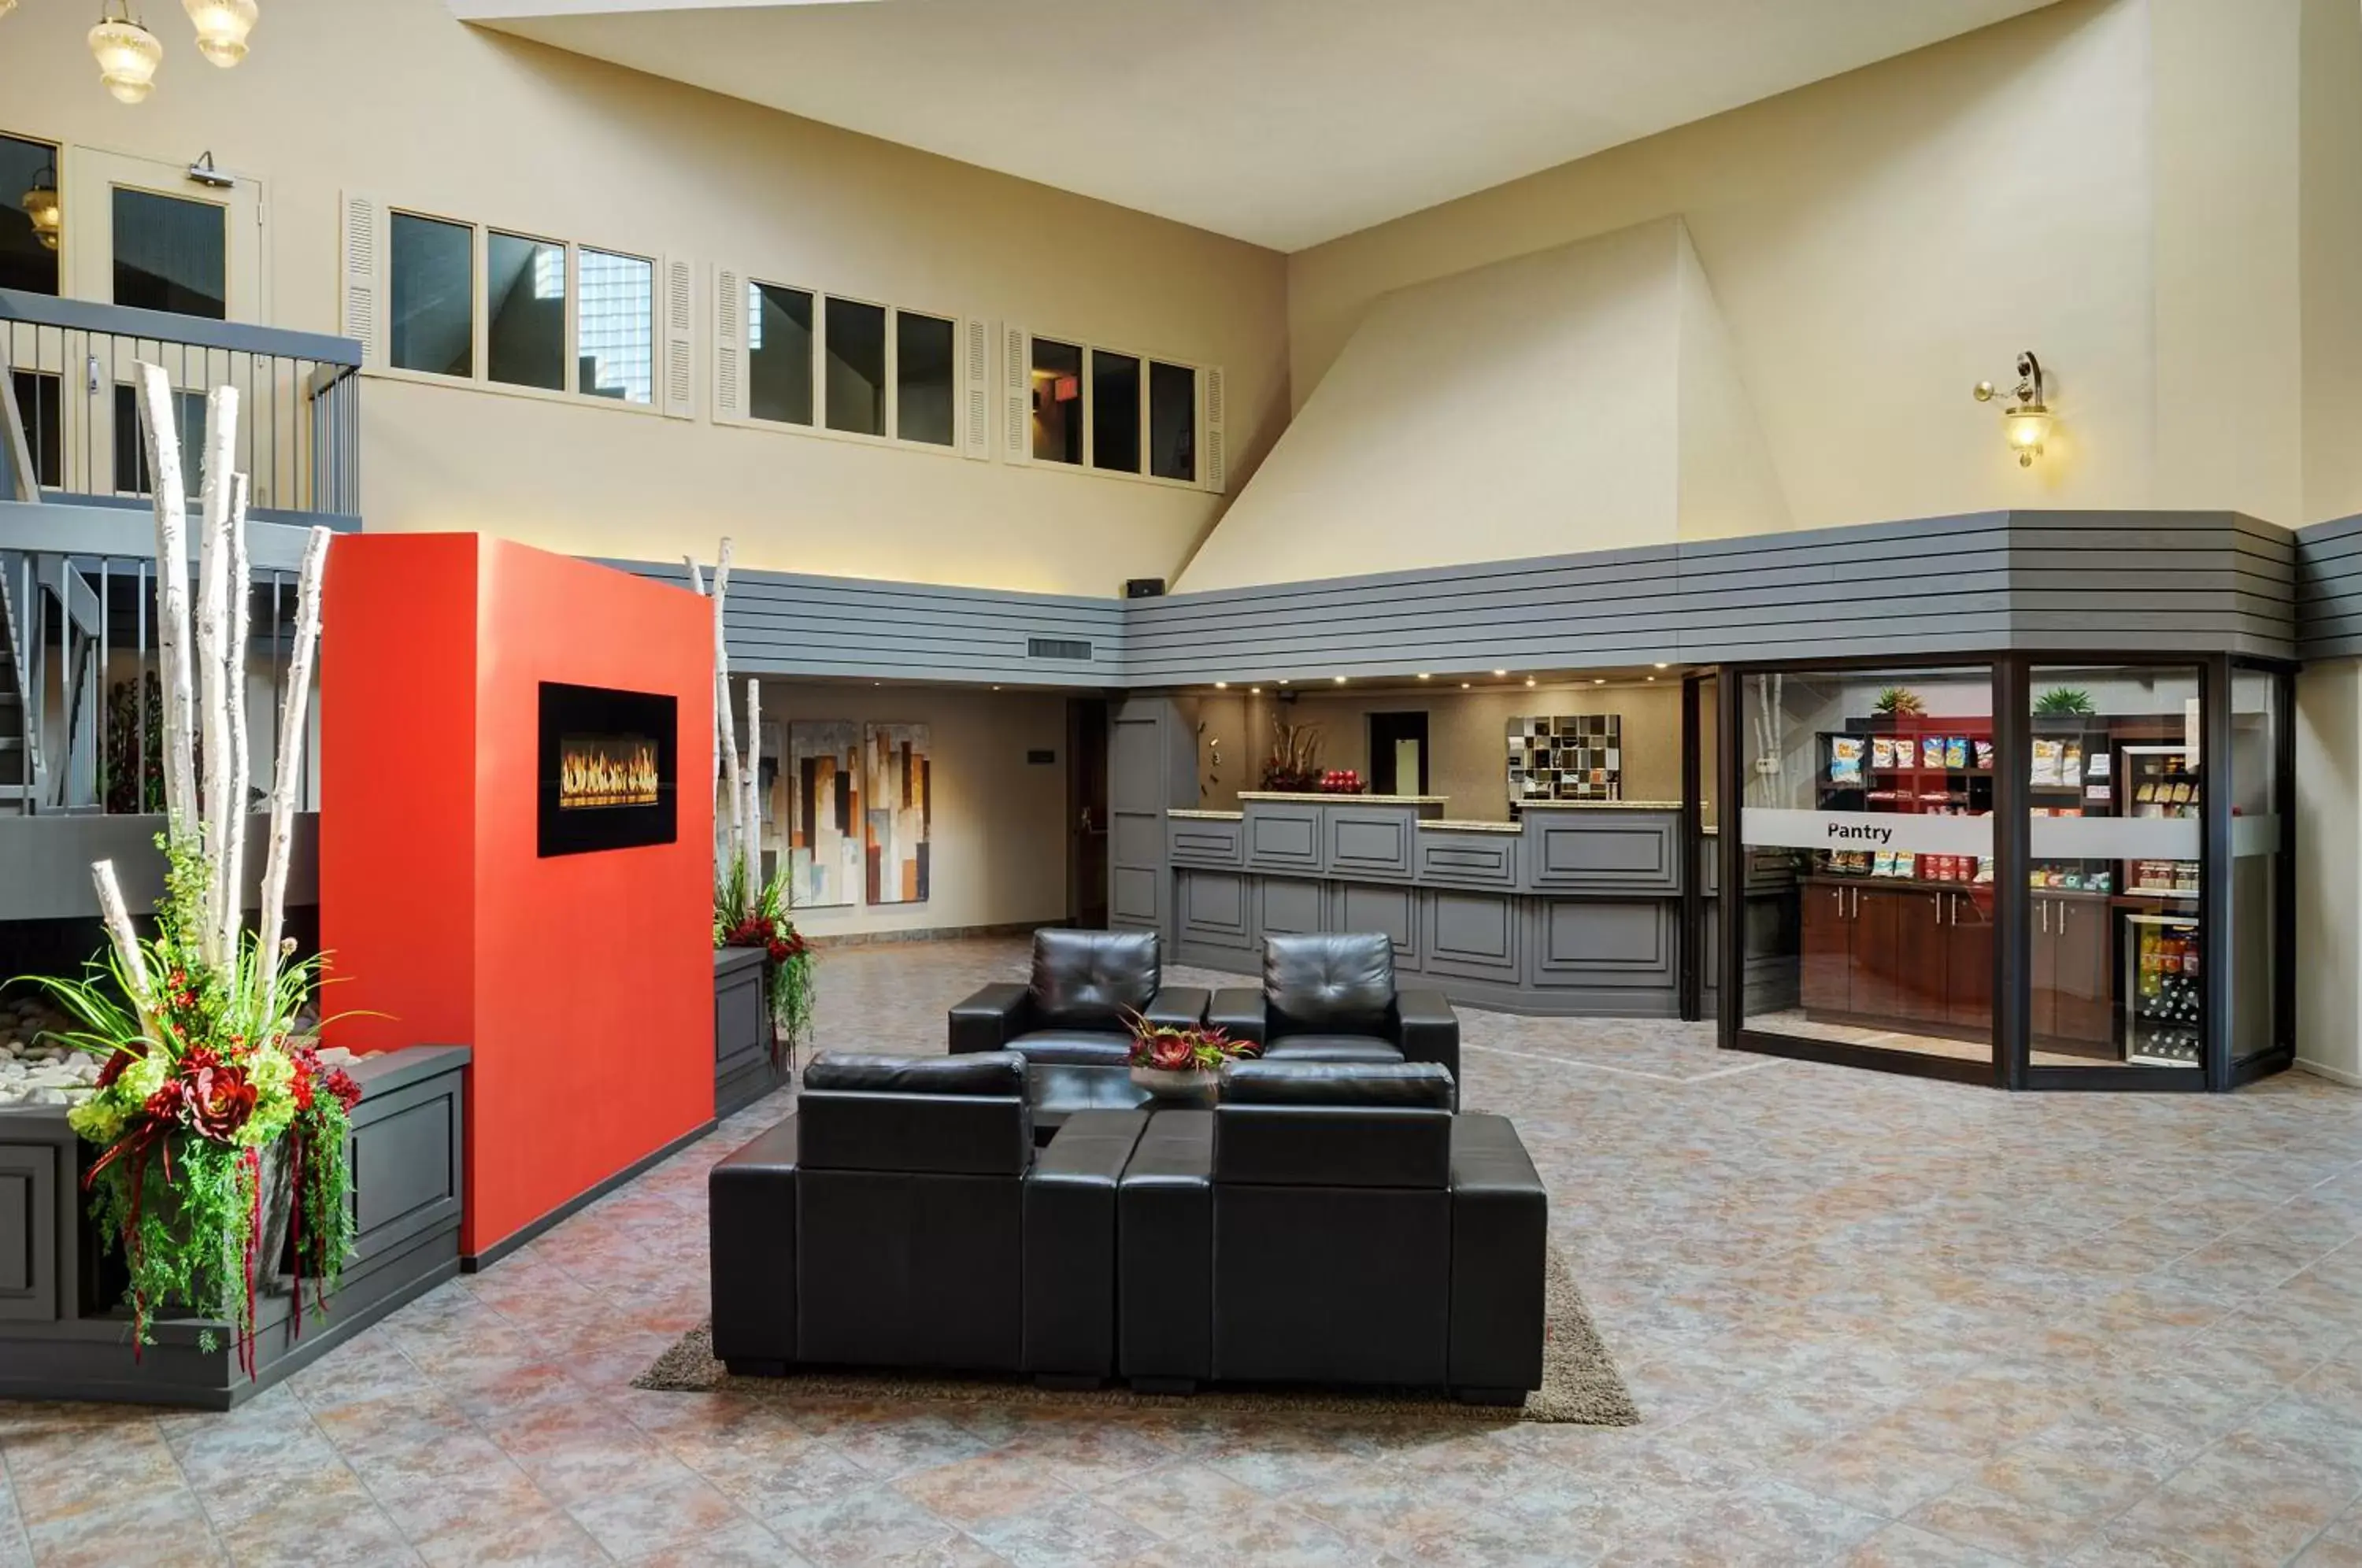 Lobby or reception in Travelway Inn Sudbury